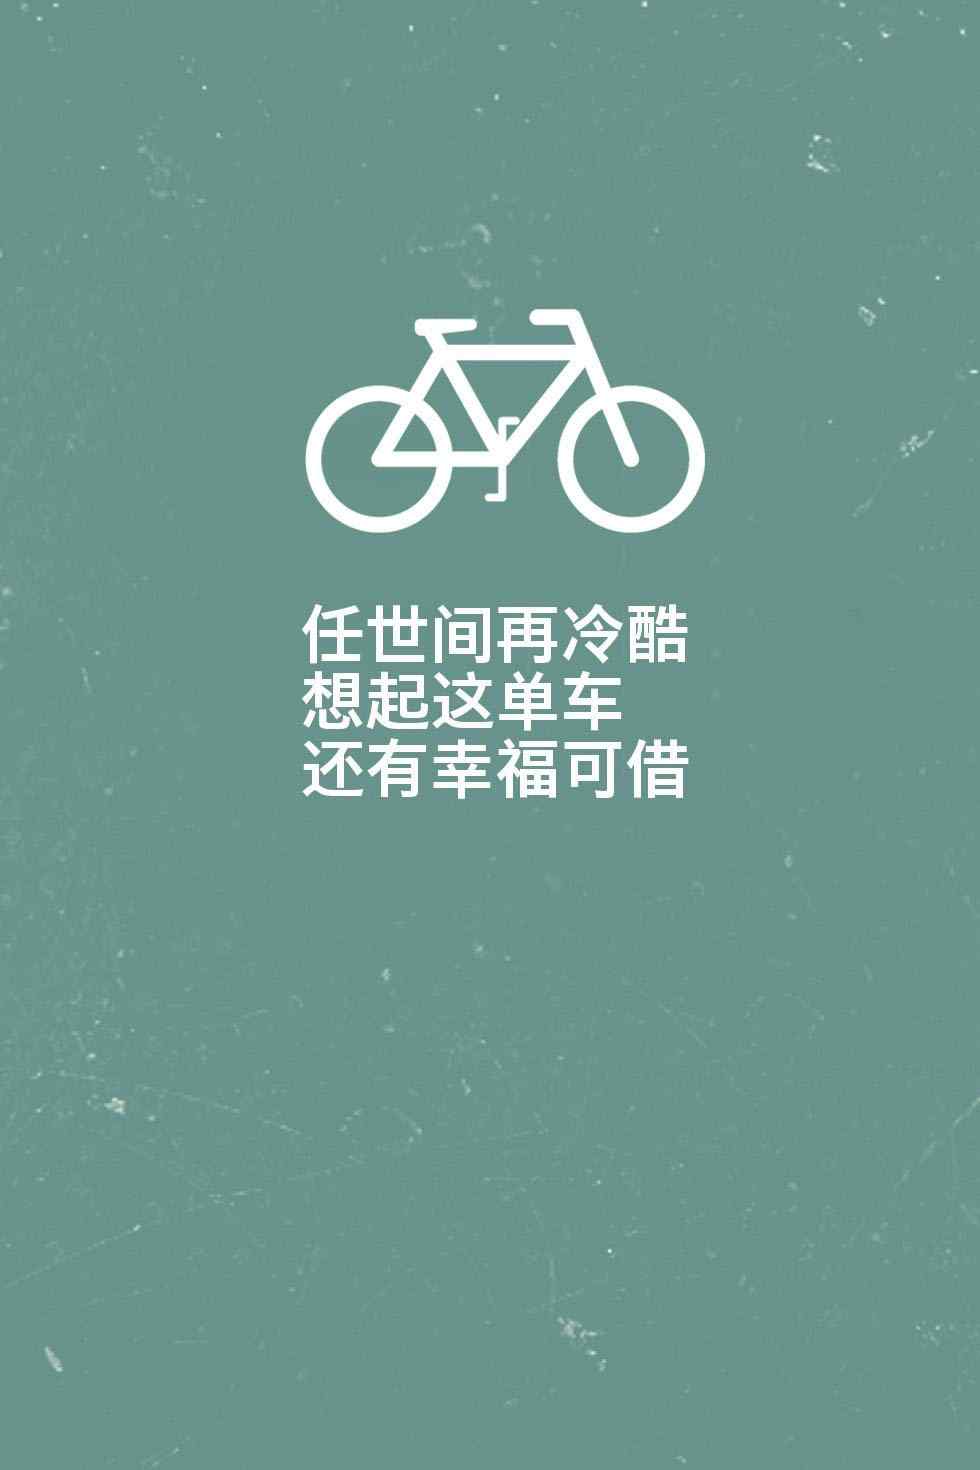 陈奕迅《单车》唯美歌词图片手机壁纸